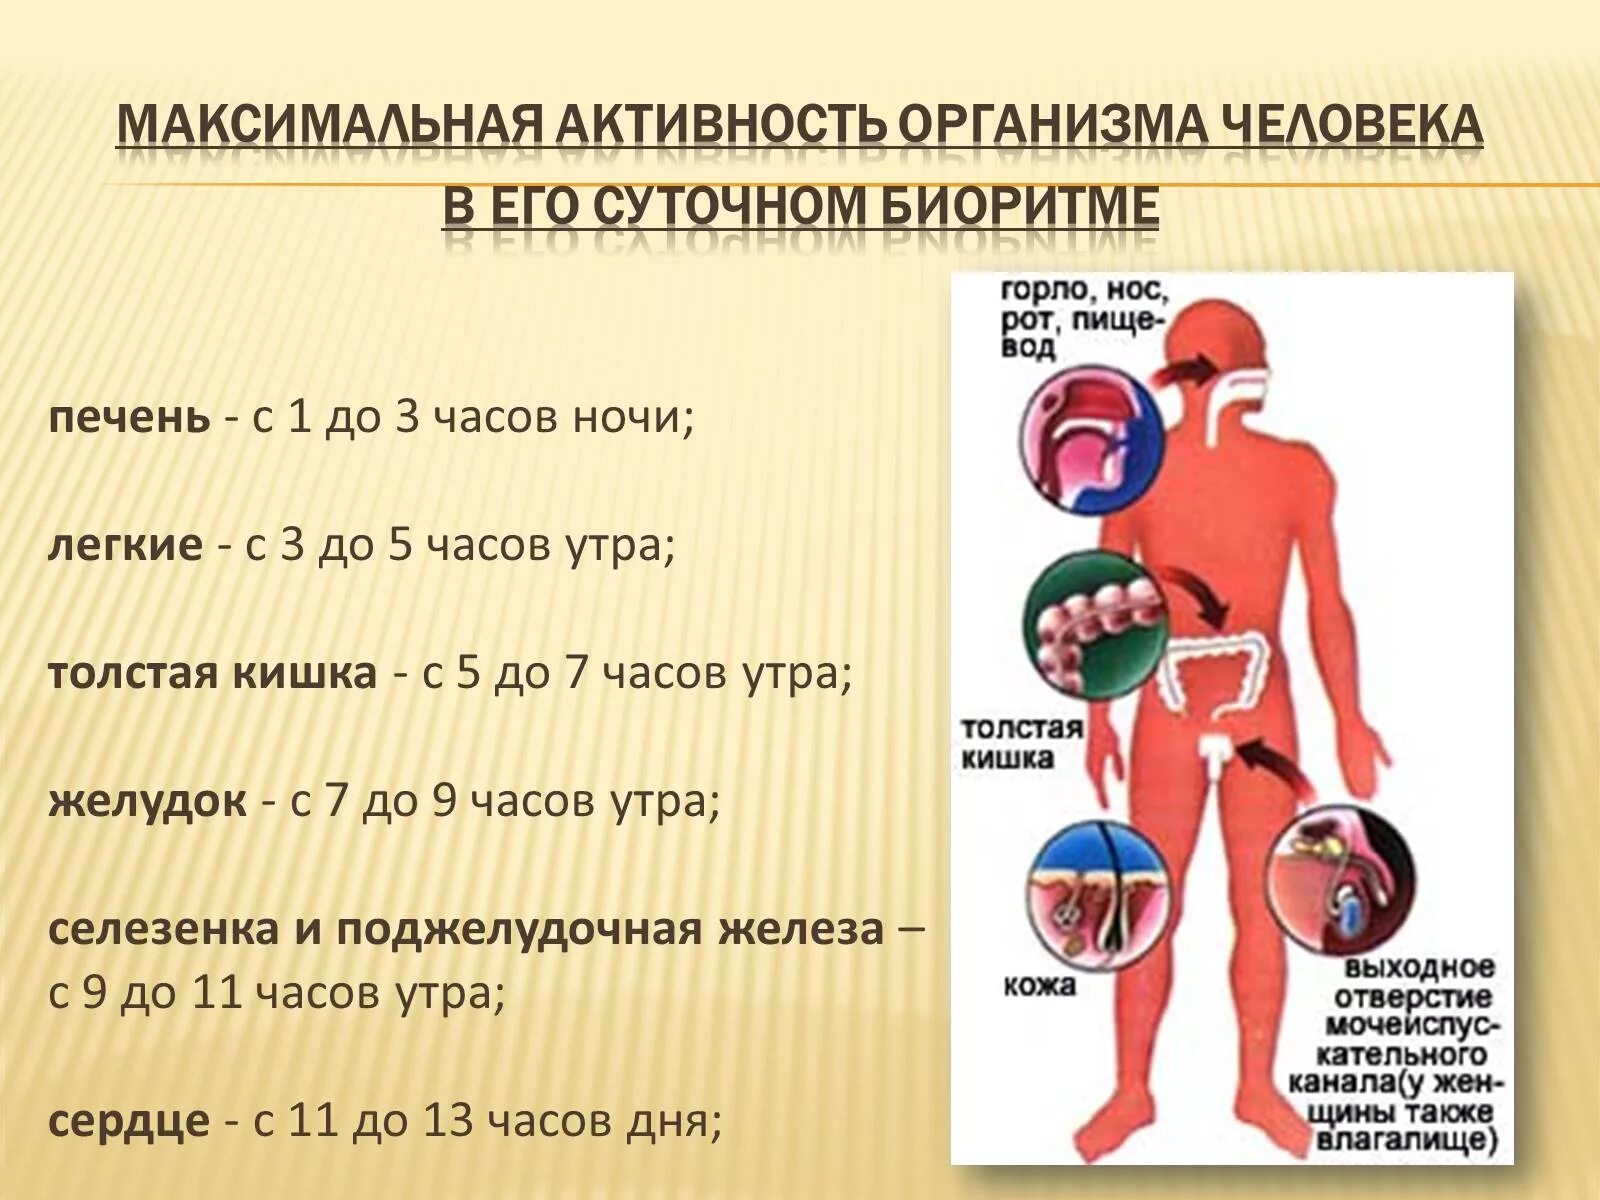 Биоритмы человека. Биологические ритмы организма человека. Физиологические ритмы человека. Суточные биоритмы органов человека.